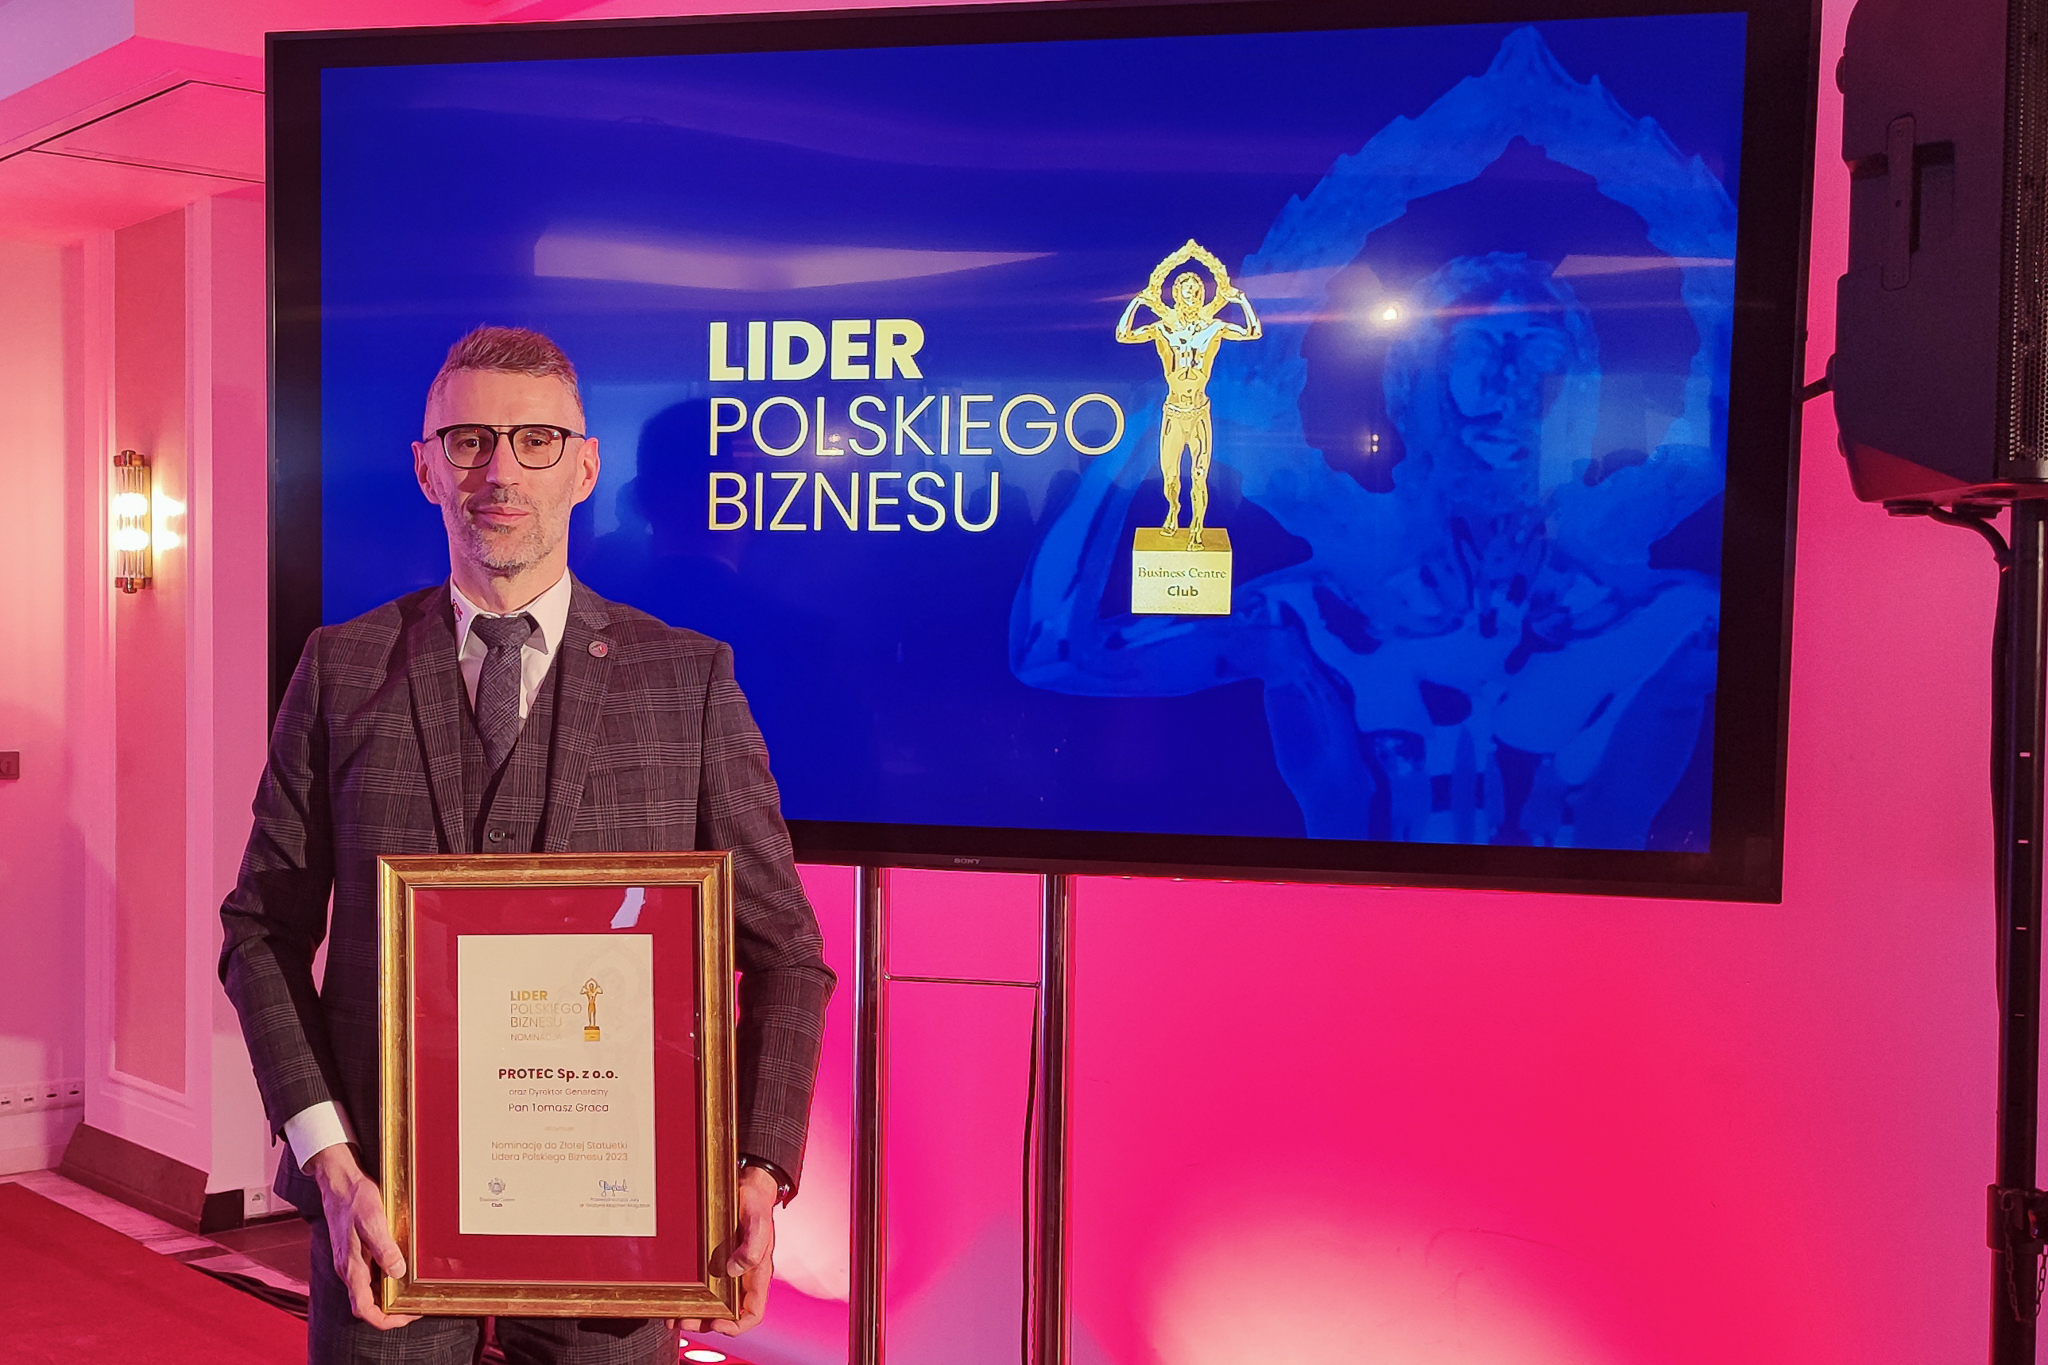 PROTEC Sp. z o.o., oraz Dyrektor Generalny zostali uhonorowani nominacją do Złotej Statuetki Lidera Polskiego Biznesu 2023 1